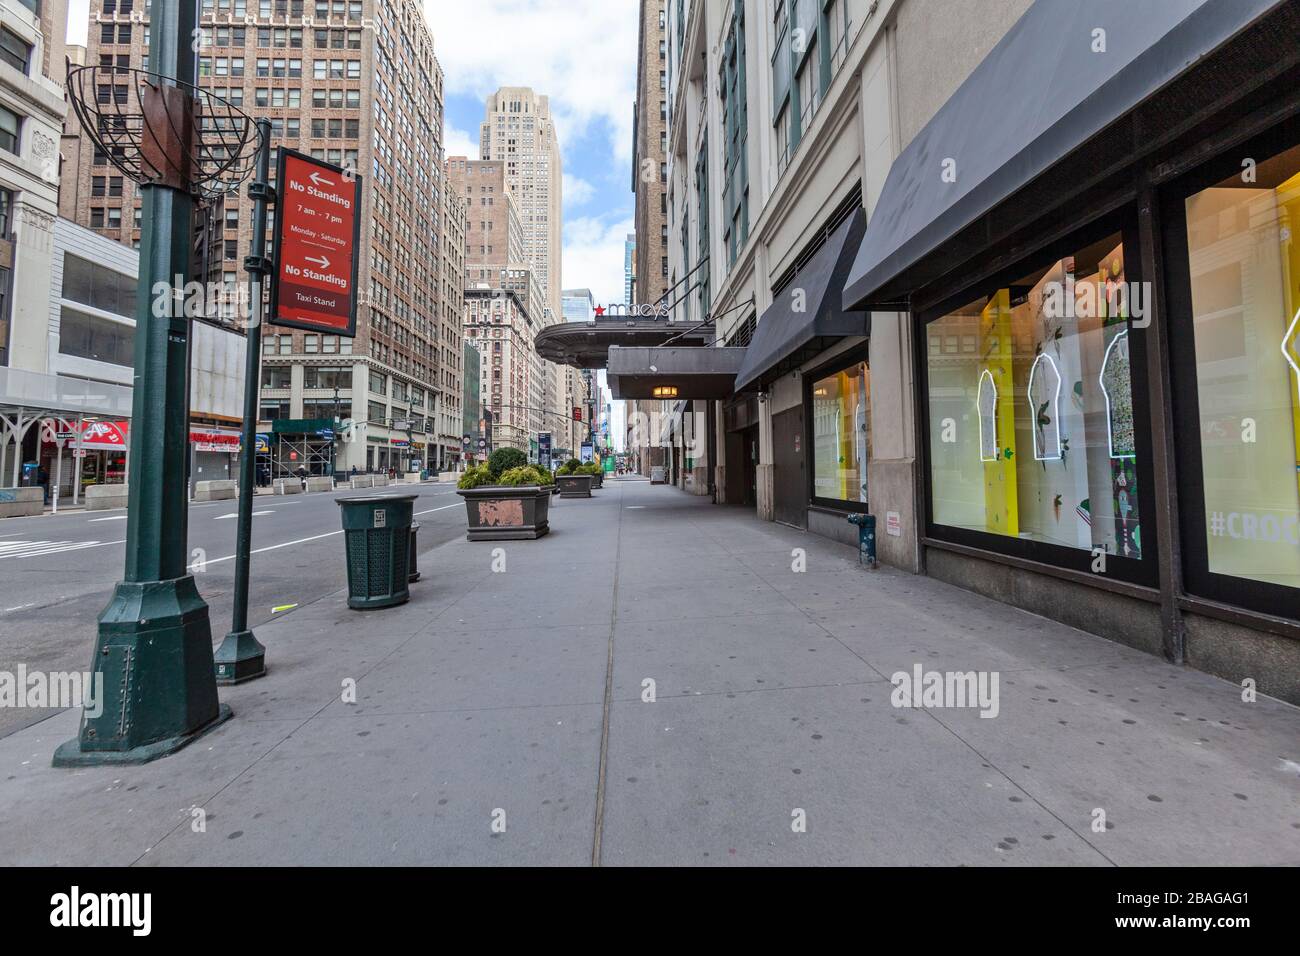 Pocas personas caminan y pocos automóviles viajan en las calles vacías de la ciudad de Nueva York debido a COVID-19, Coronavirus. Foto de stock